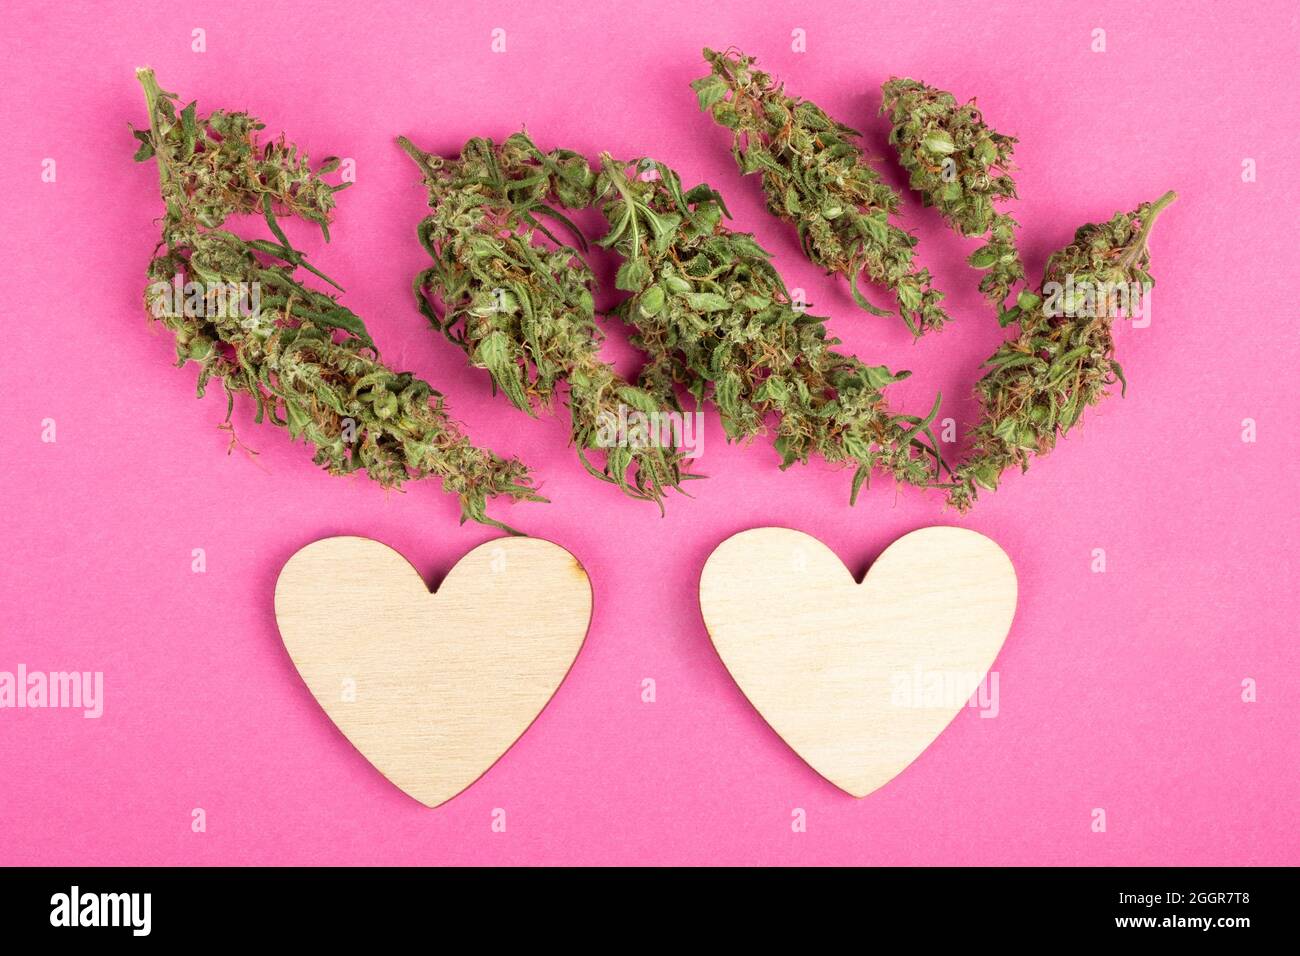 weed love heart